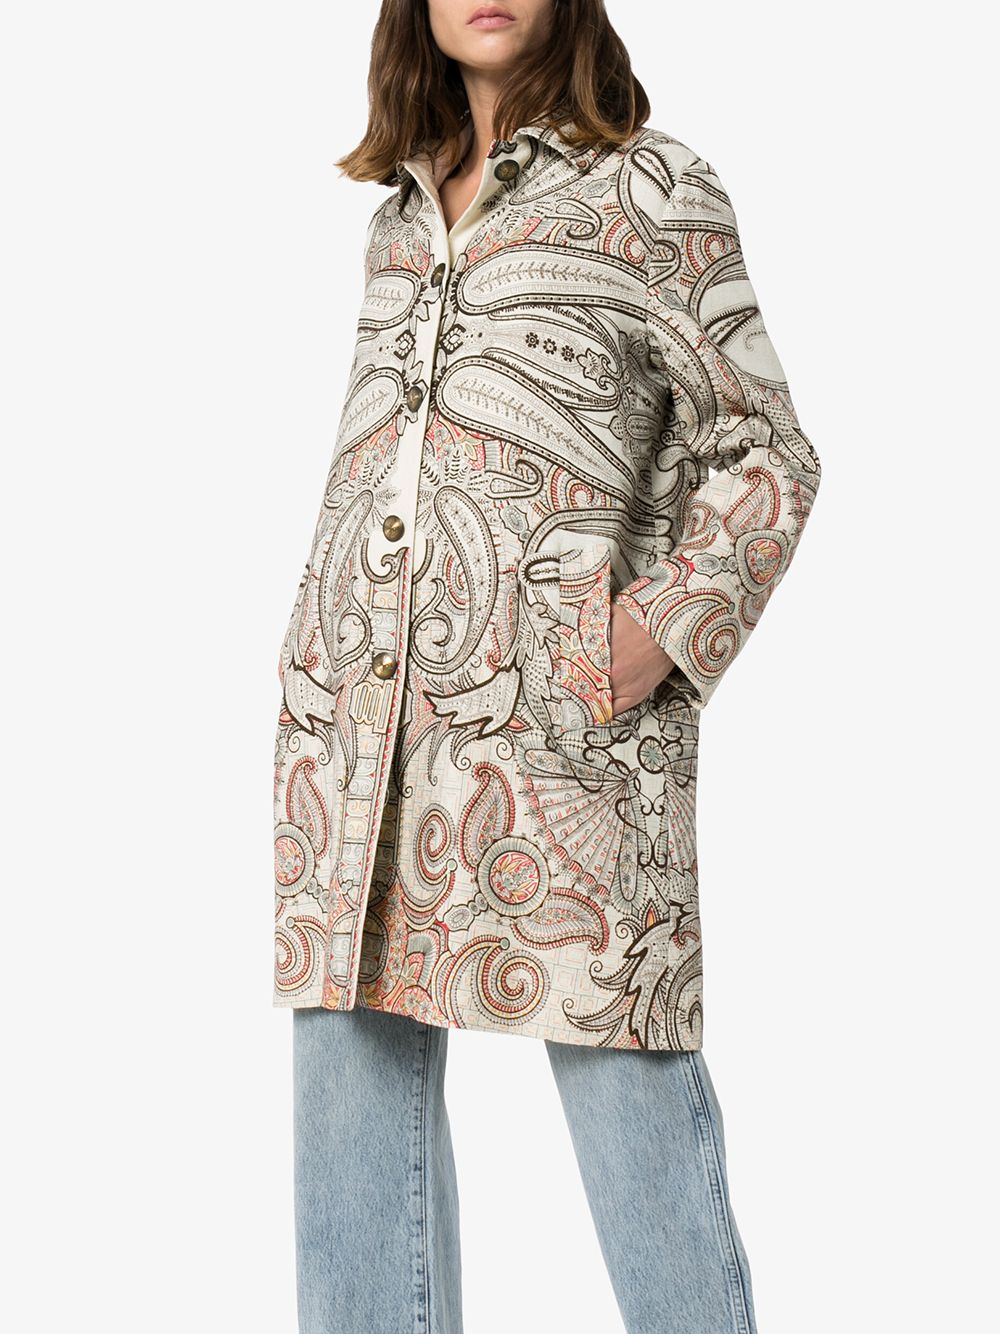 фото Etro пальто с вышитым узором пейсли